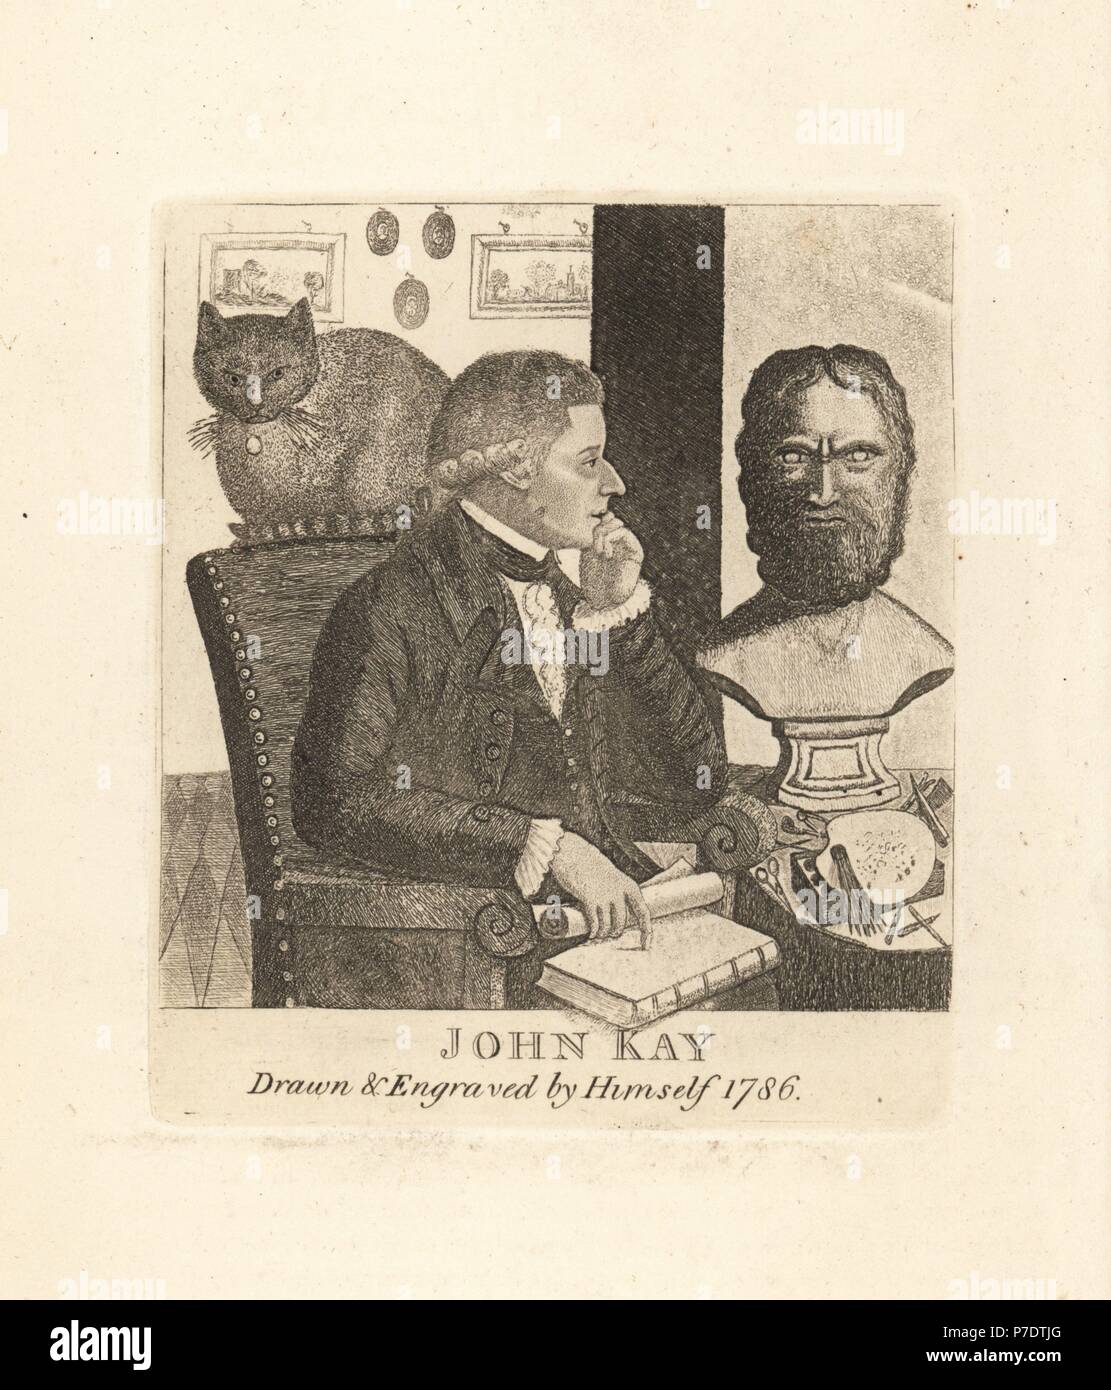 John Kay, gezeichnet und gestochen von sich selbst, 1786. Kupferstich von John Kay von A Series of Original Portraits und Karikatur Radierungen, Hugh Paton, Edinburgh, 1842. Stockfoto